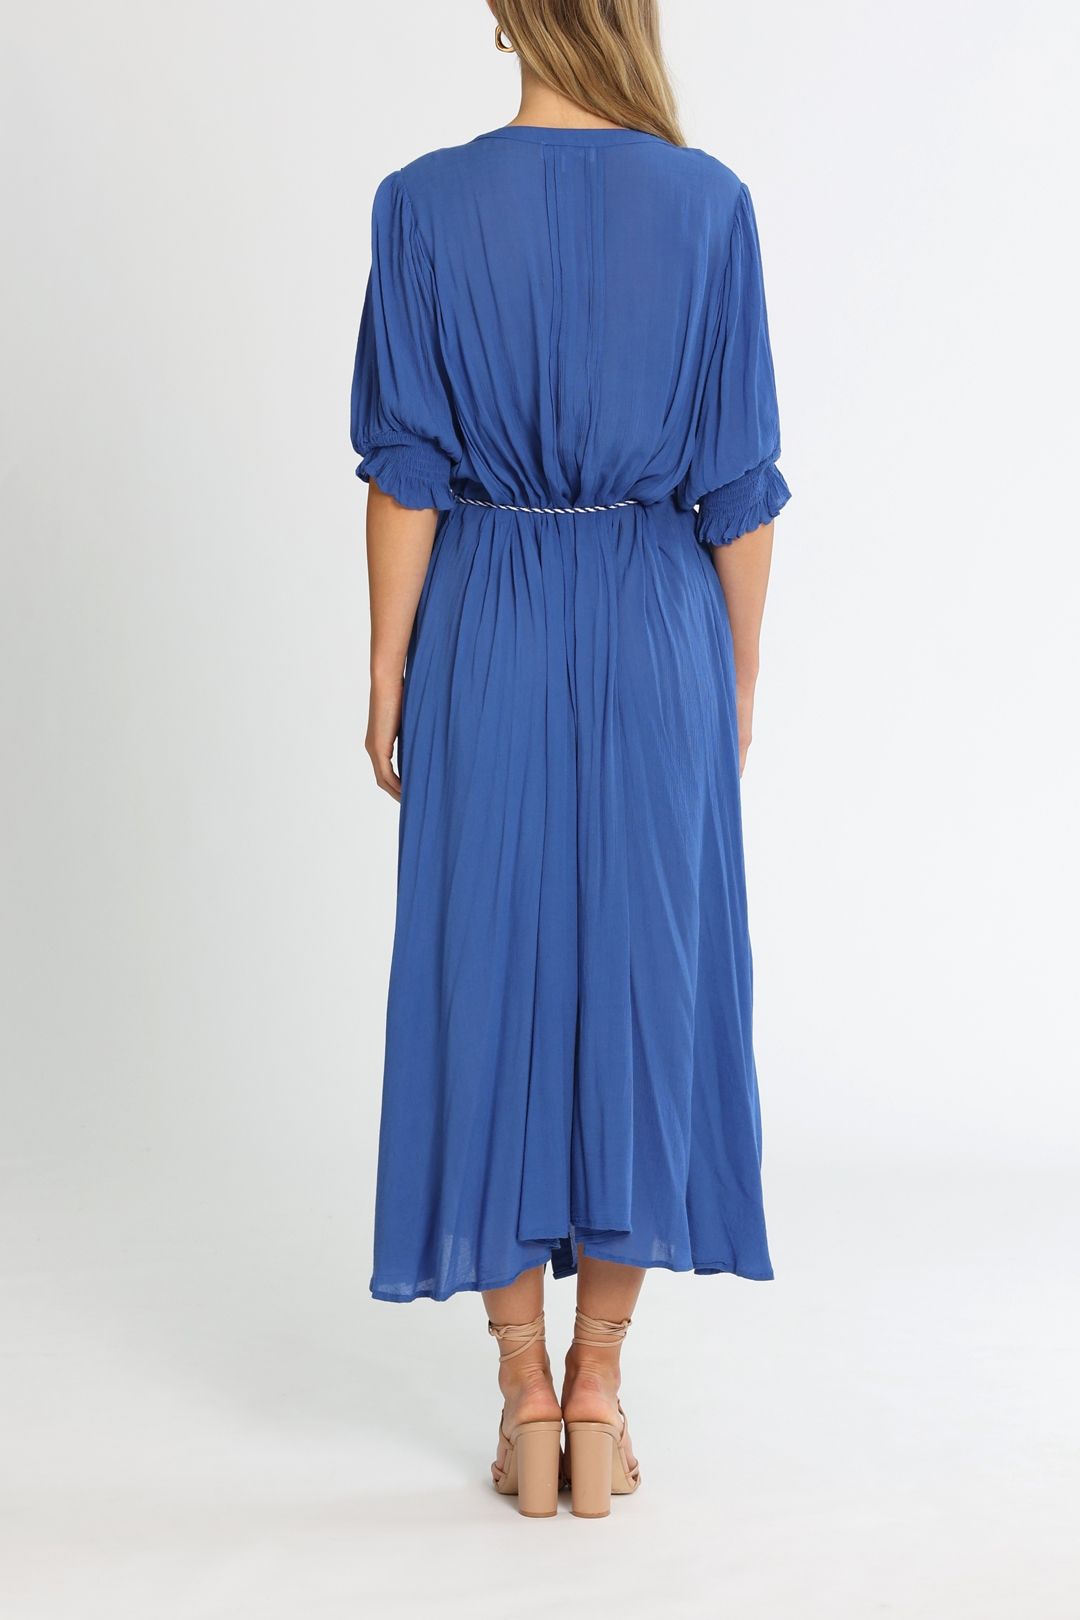 Bohemian Traders Raglan Flutter Sleeve Maxi Dress W Belt Cobalt A Line Skirt